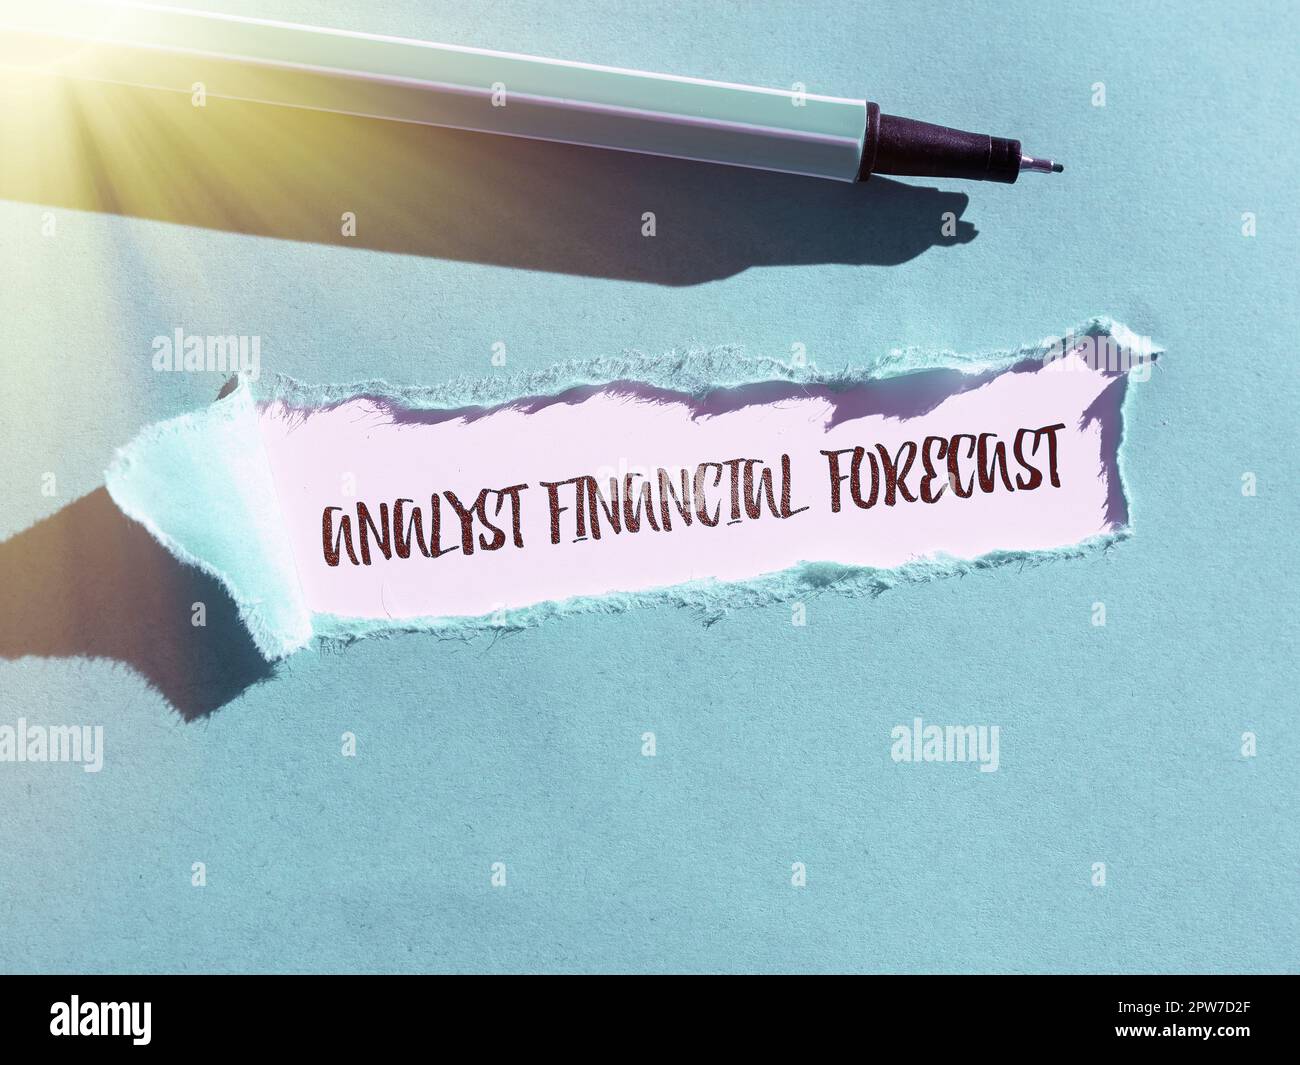 Visualizzazione concettuale Analyst Financial forecast, Word per la stima dei risultati finanziari futuri di un'azienda Foto Stock